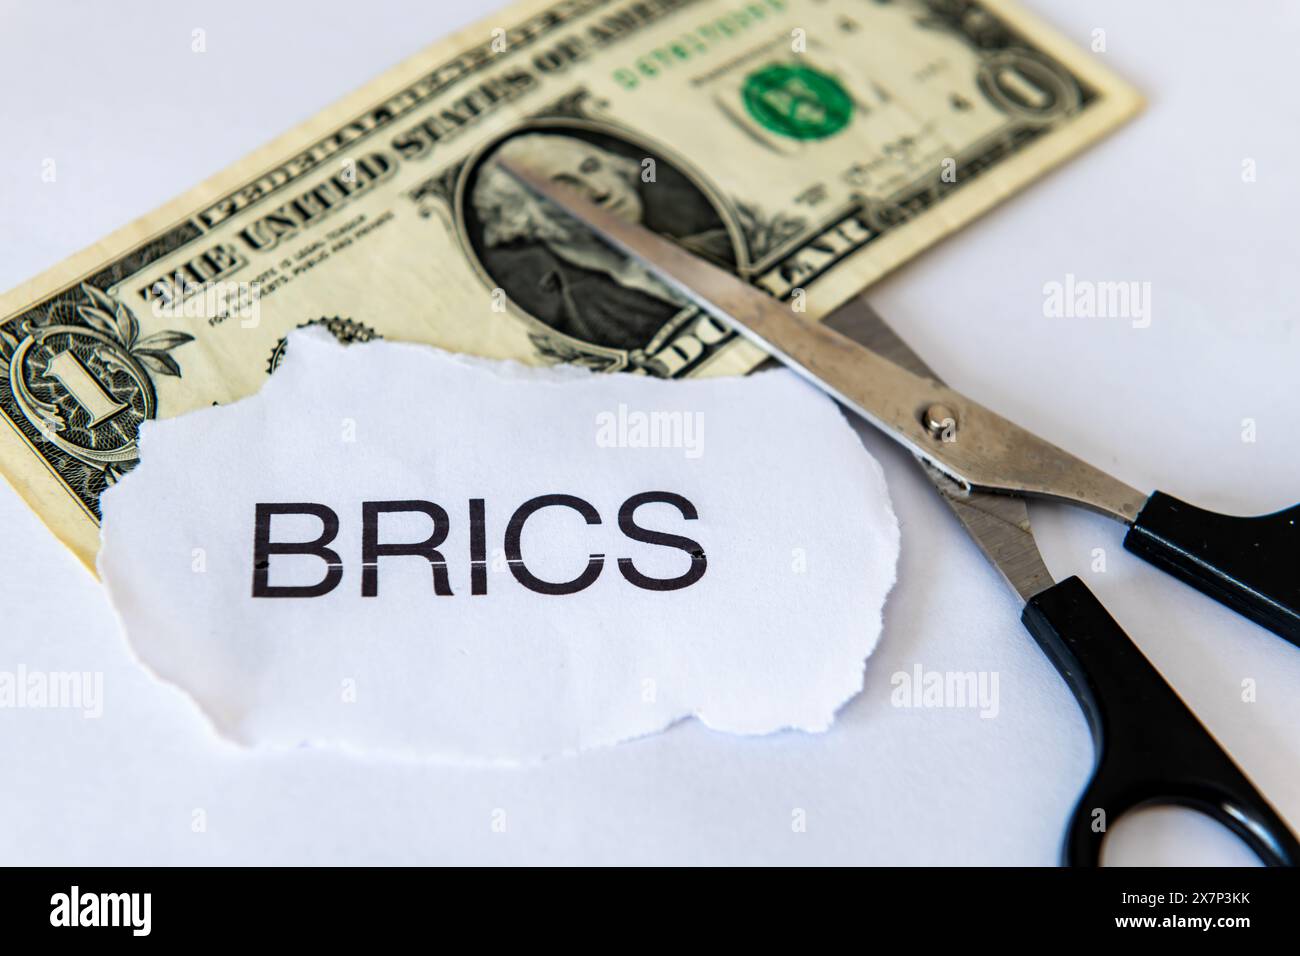 Un concetto di dedollarizzazione con una banconota da un dollaro, la parola BRICS e un paio di forbici isolate in bianco. Foto Stock